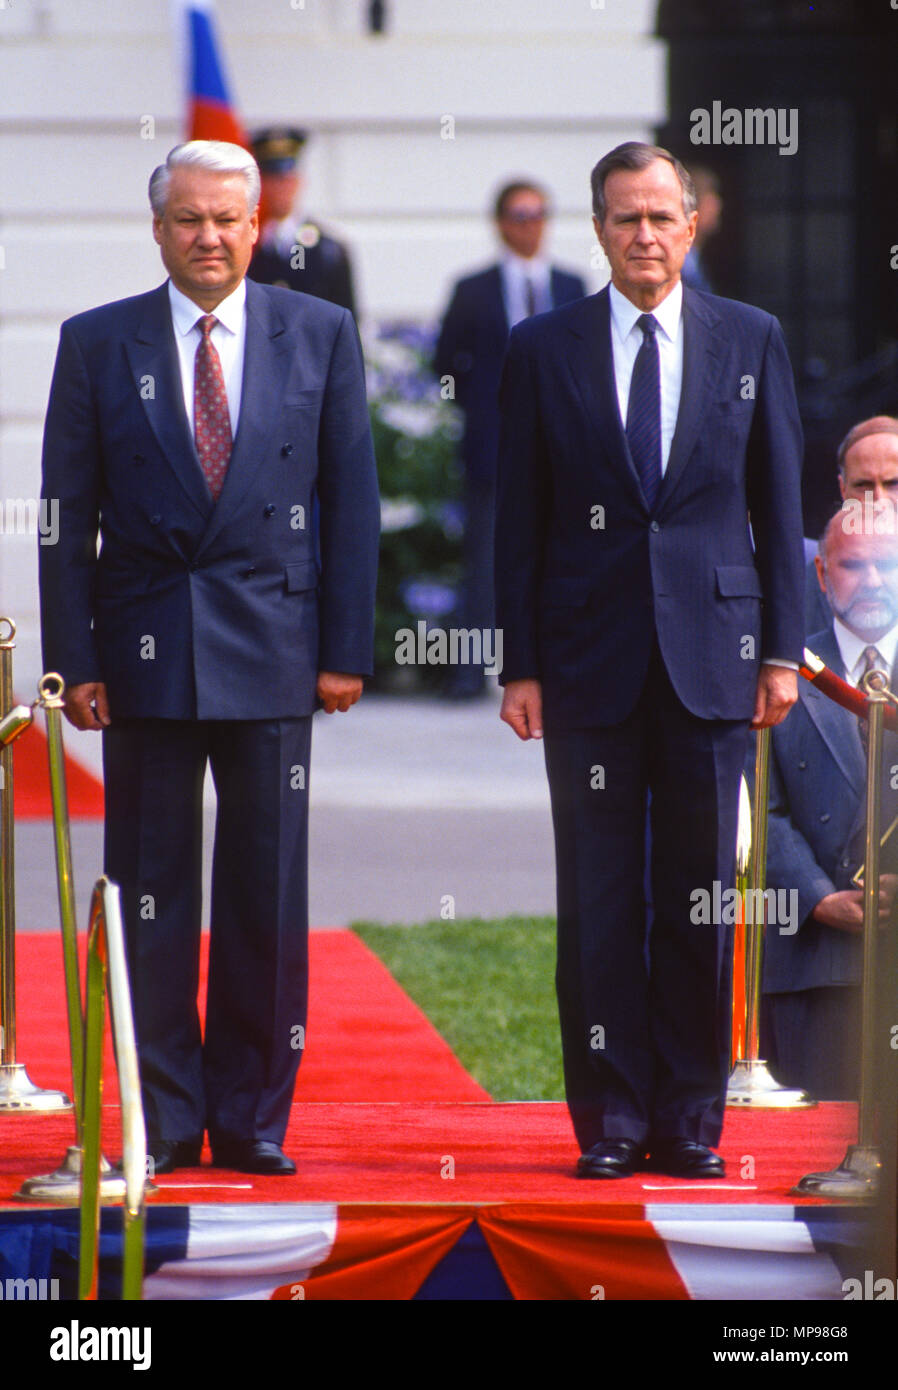 WASHINGTON, DC, USA - 17 juin 1992 : Le Président de la Russie Boris Yeltin, gauche, au cours de la cérémonie d'arrivée au sommet de la Maison Blanche sur la pelouse Sud, avec le président George H. W. Bush. Banque D'Images